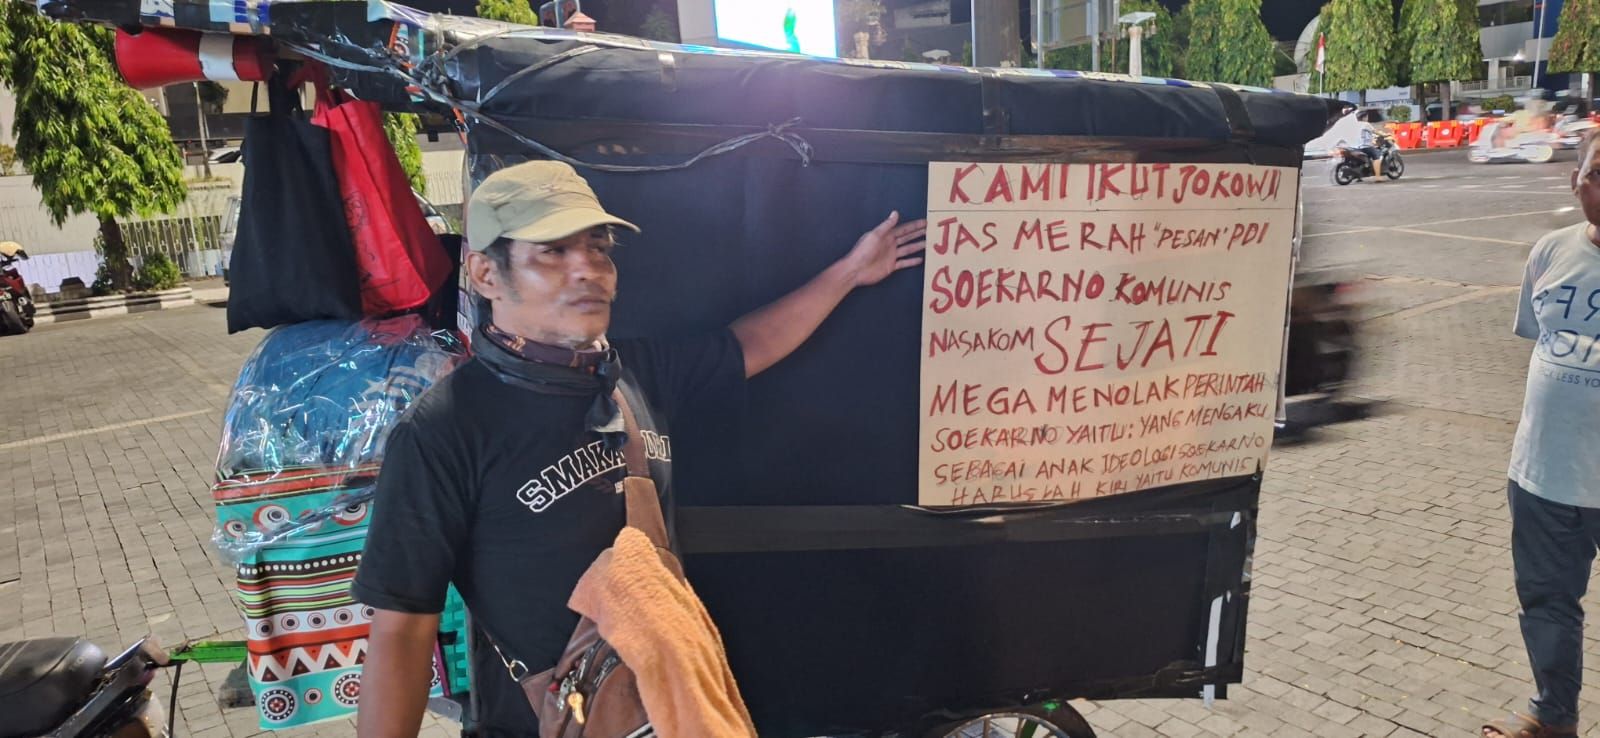 Pria Mengaku Loyalis Jokowi Datangi Balai Kota Solo, Mengaku Orang Magelang dan Sempat Ditemui Wakil Wali Kota Teguh